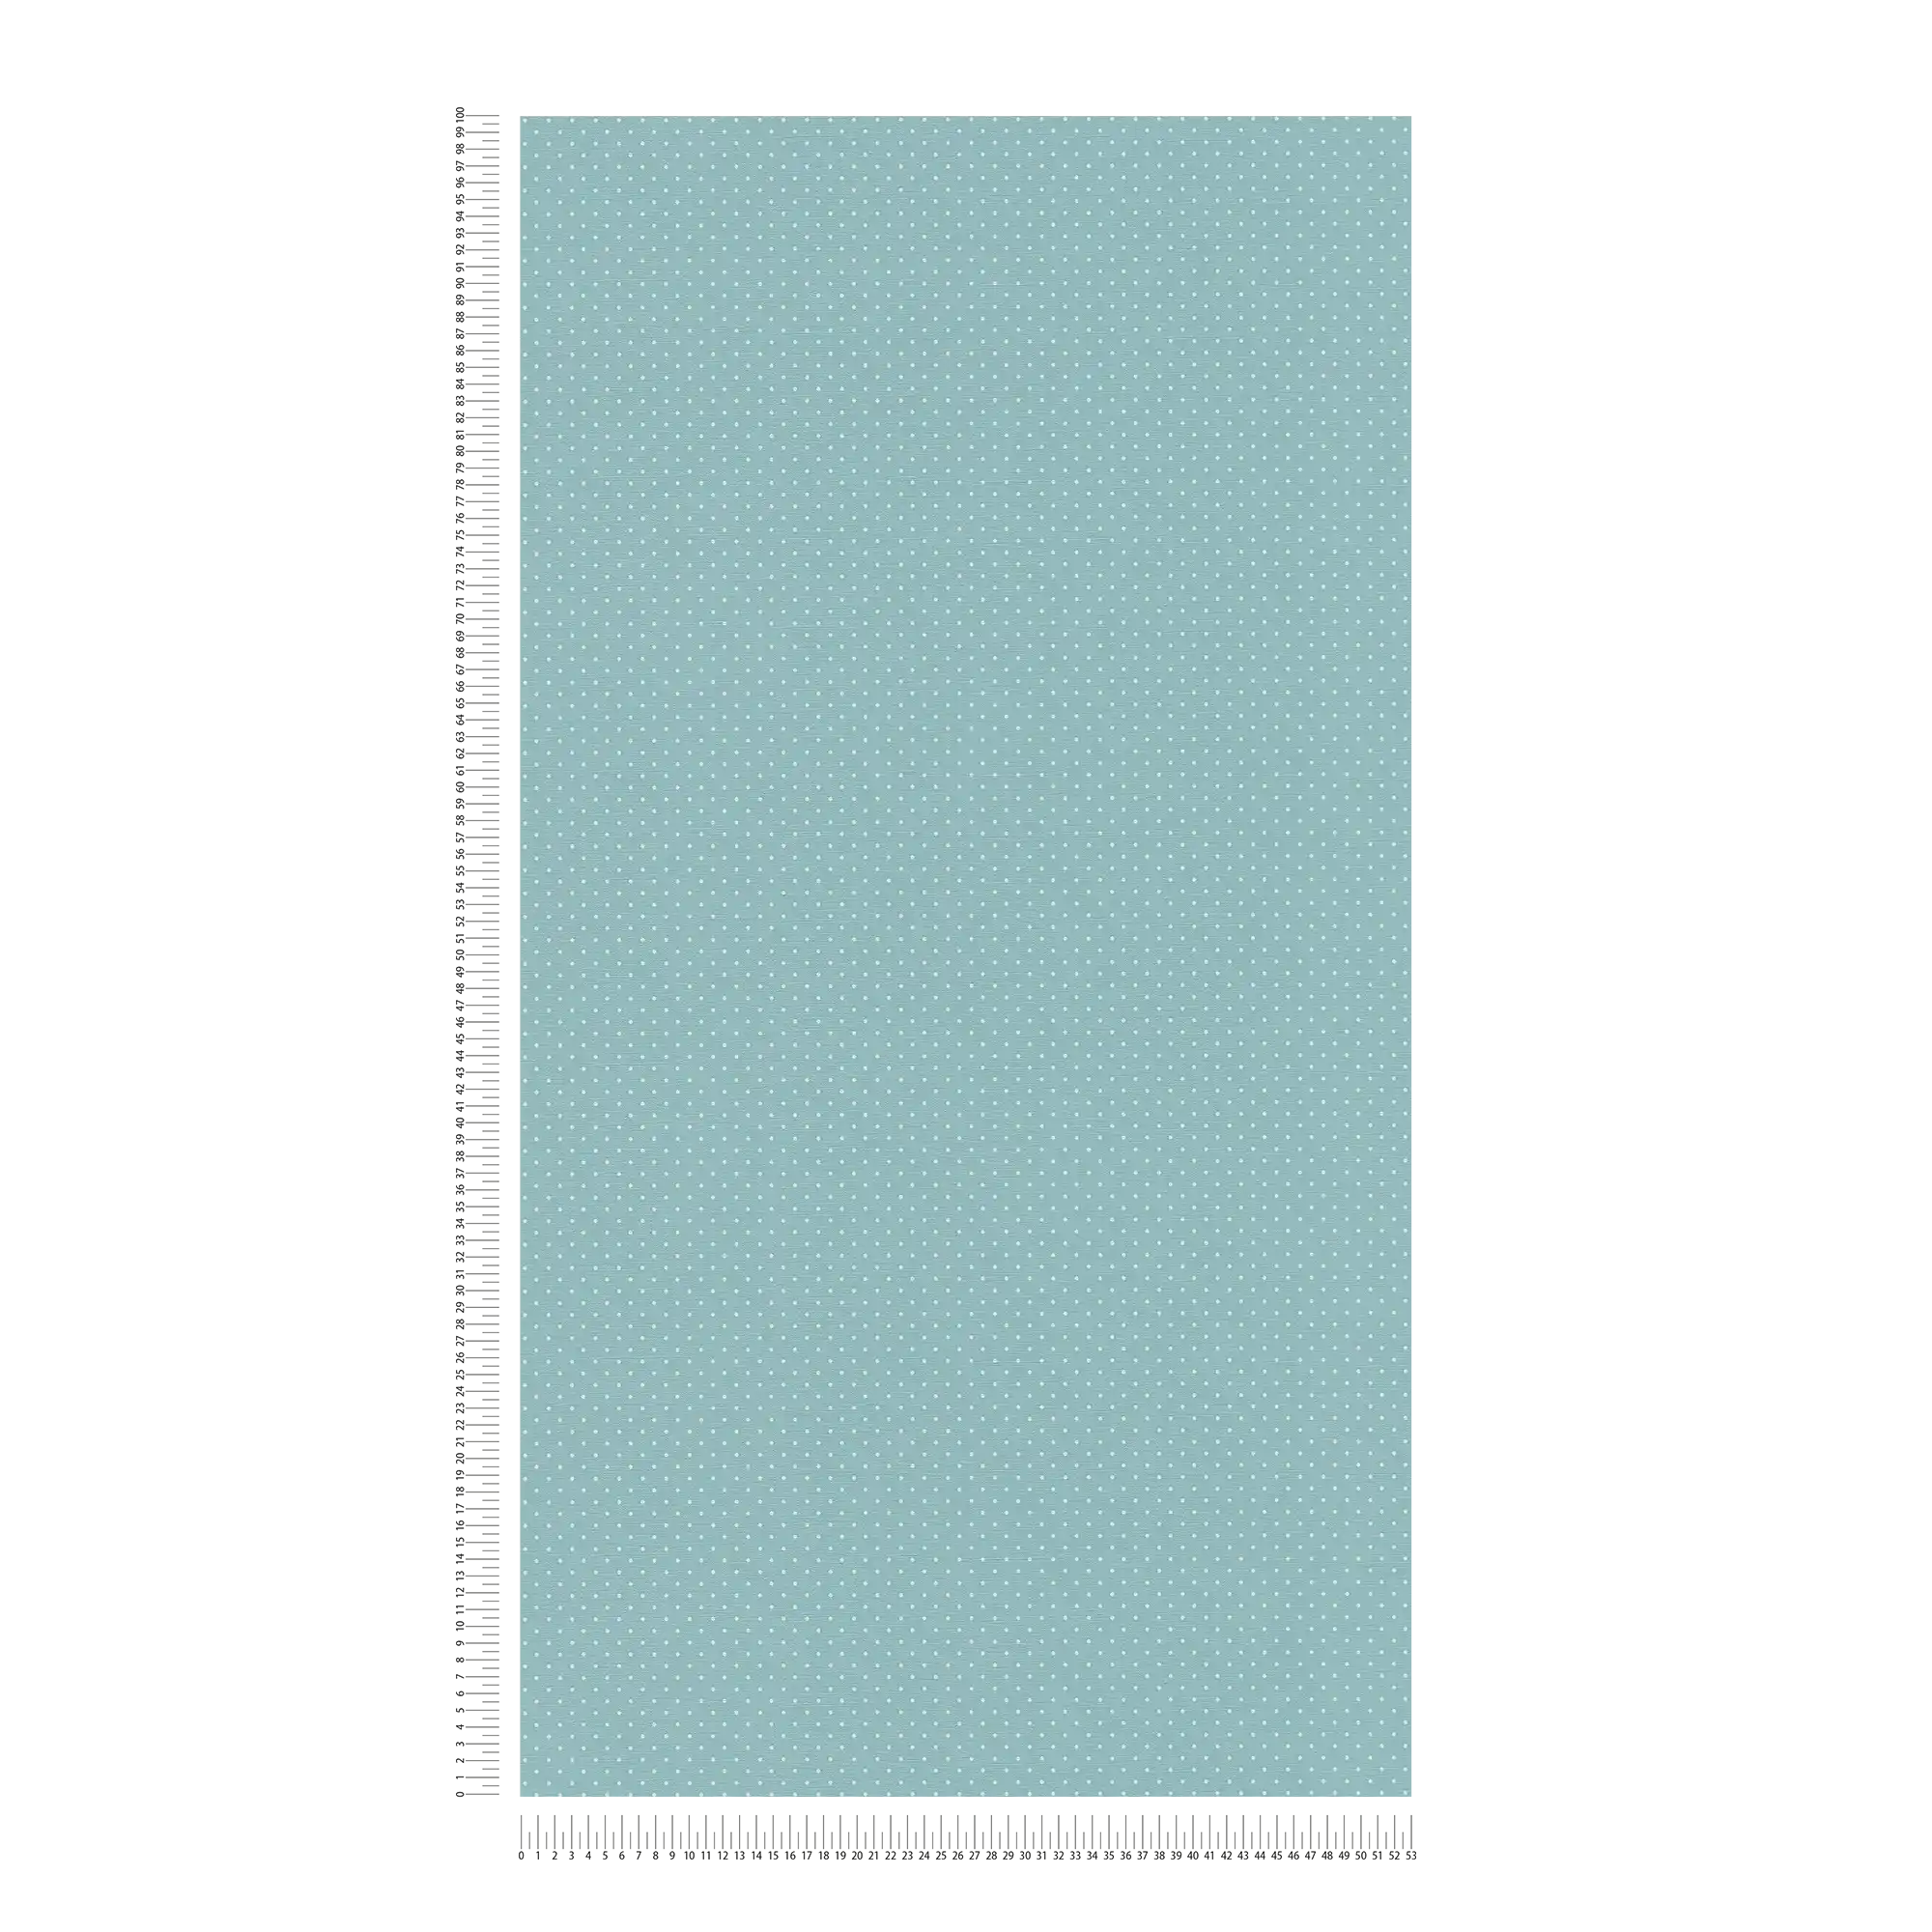             Vliestapete mit kleinem Punktmuster – Blau, Weiß
        